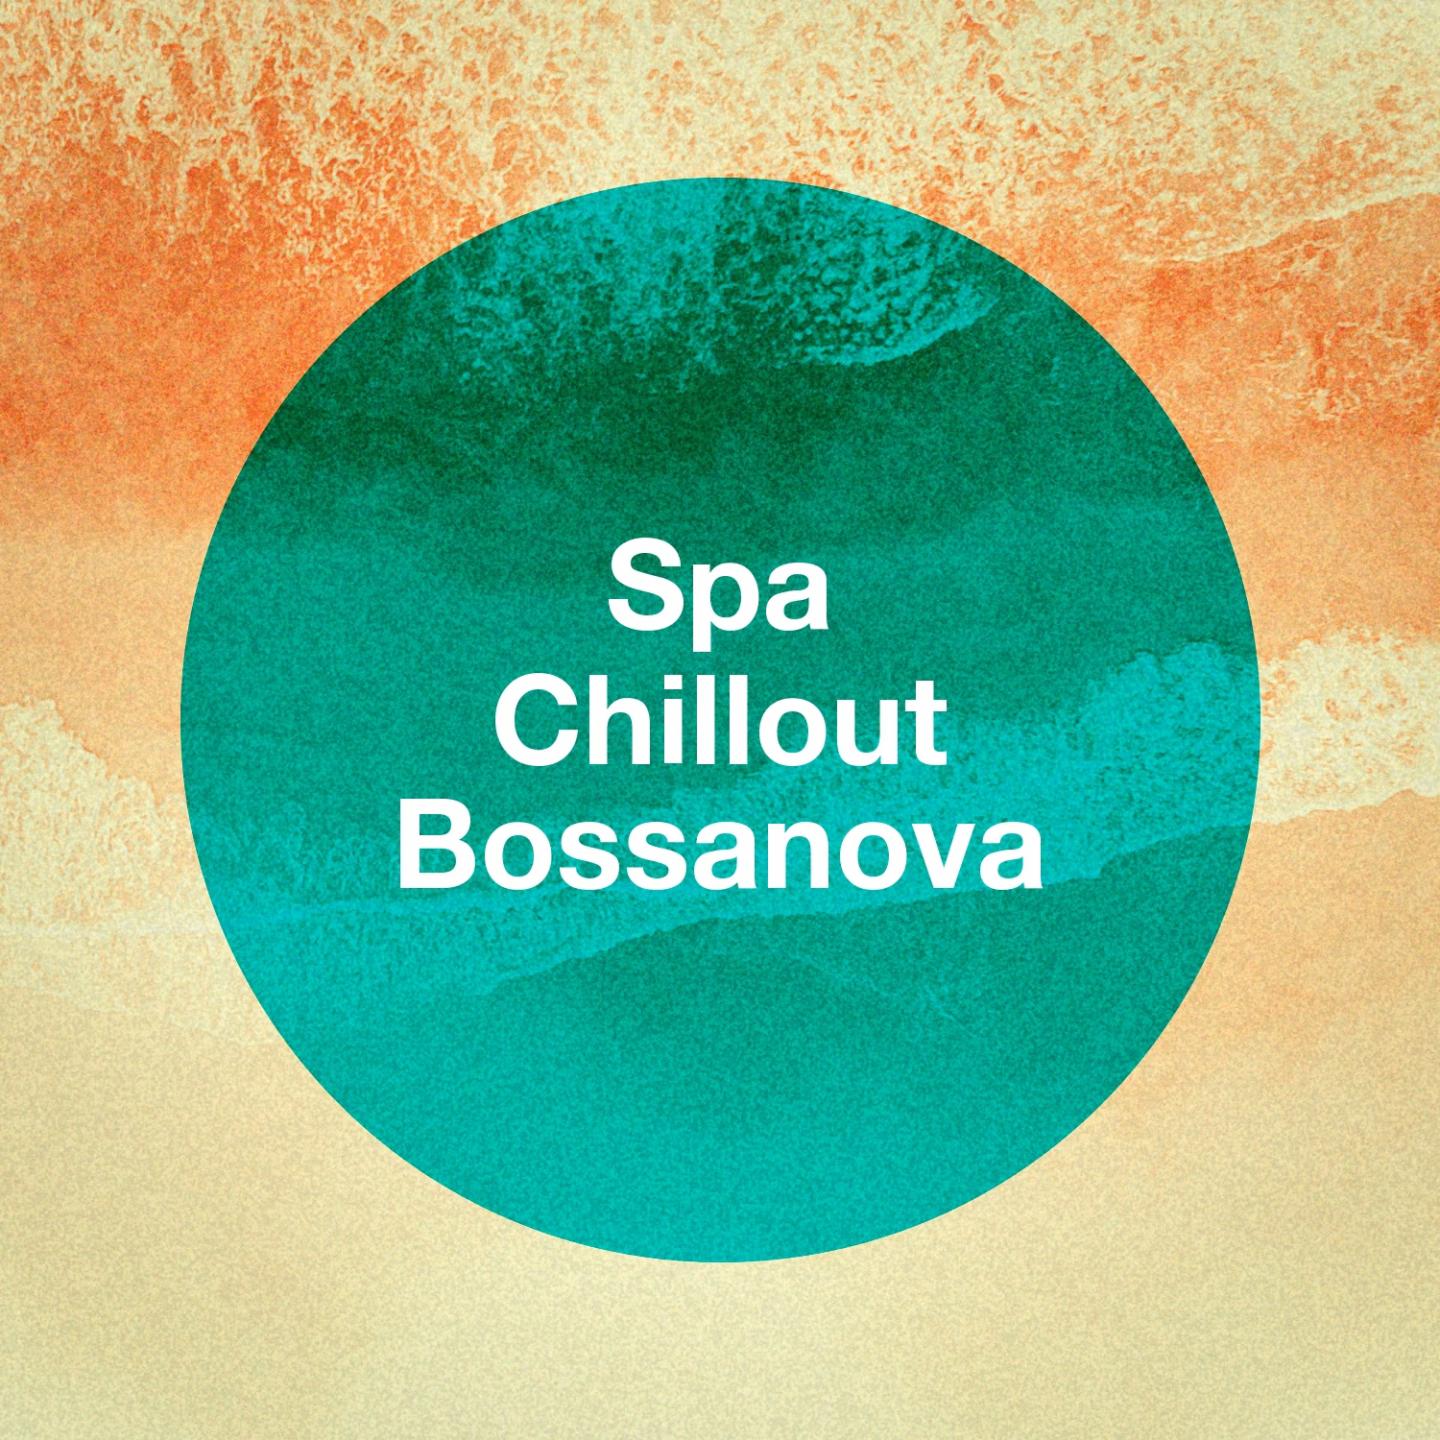 Spa Chillout Bossanova